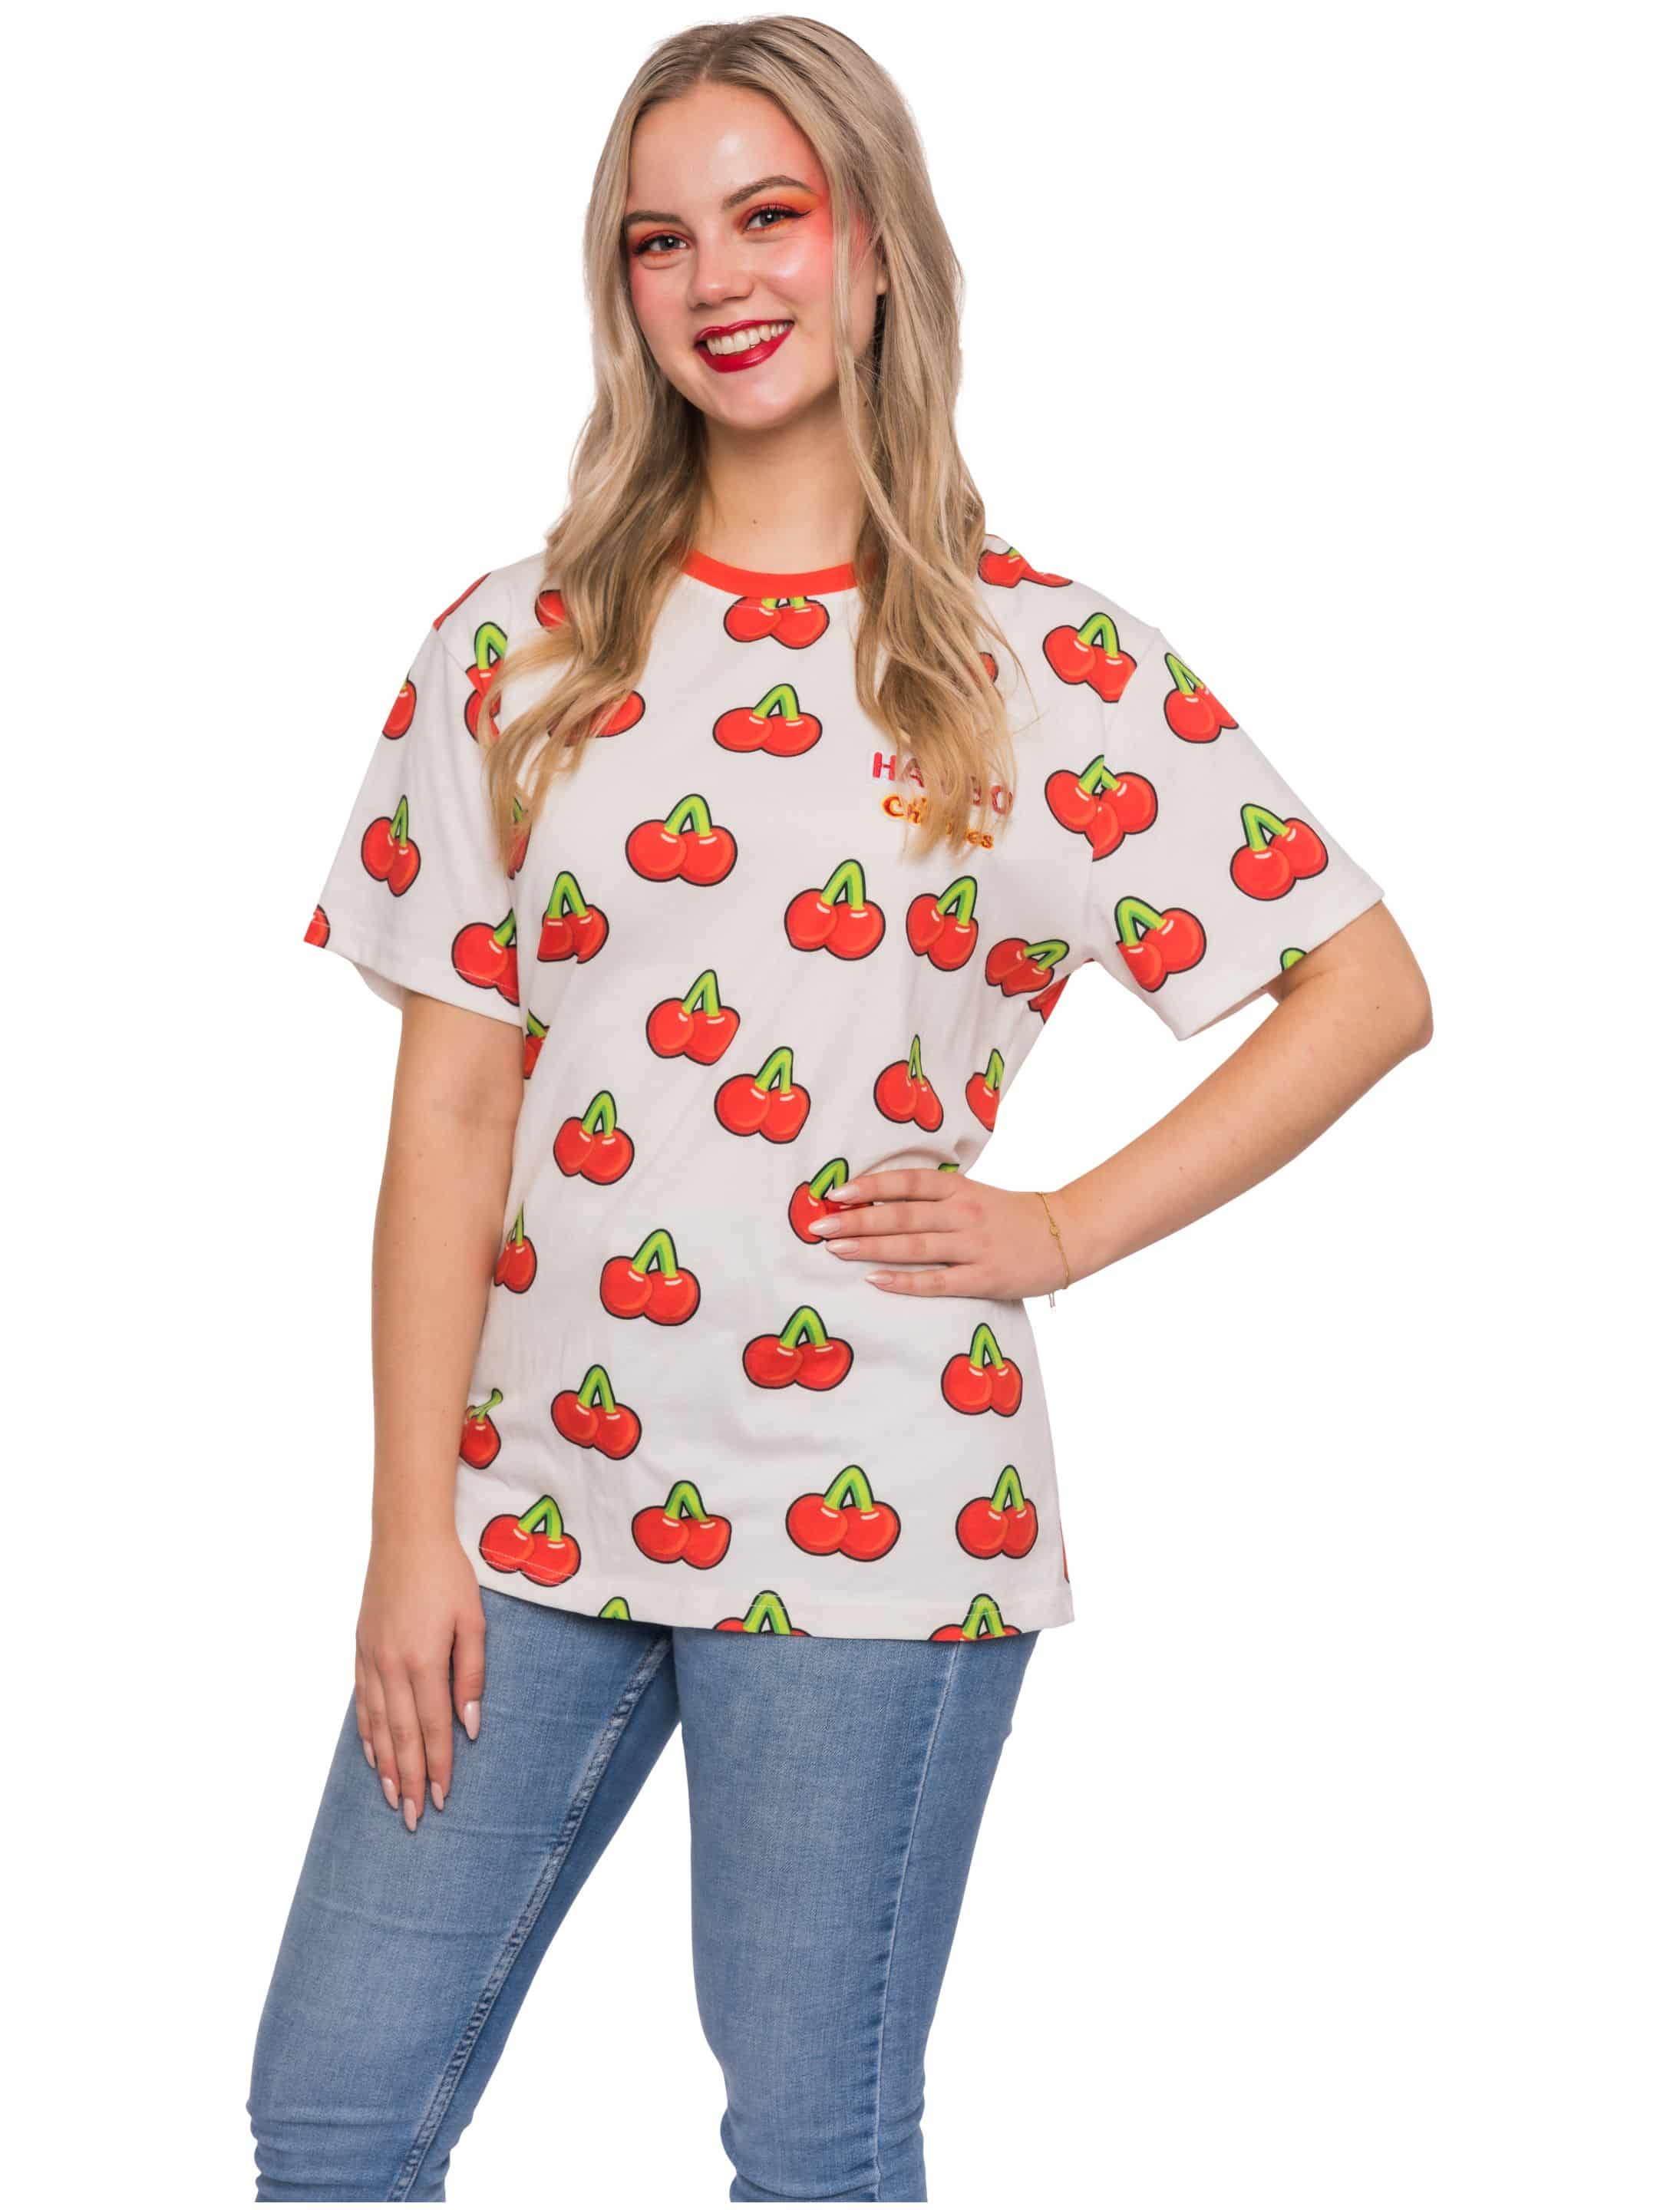 T-Shirt HARIBO Happy Cherries Unisex weiß/rot 3XL